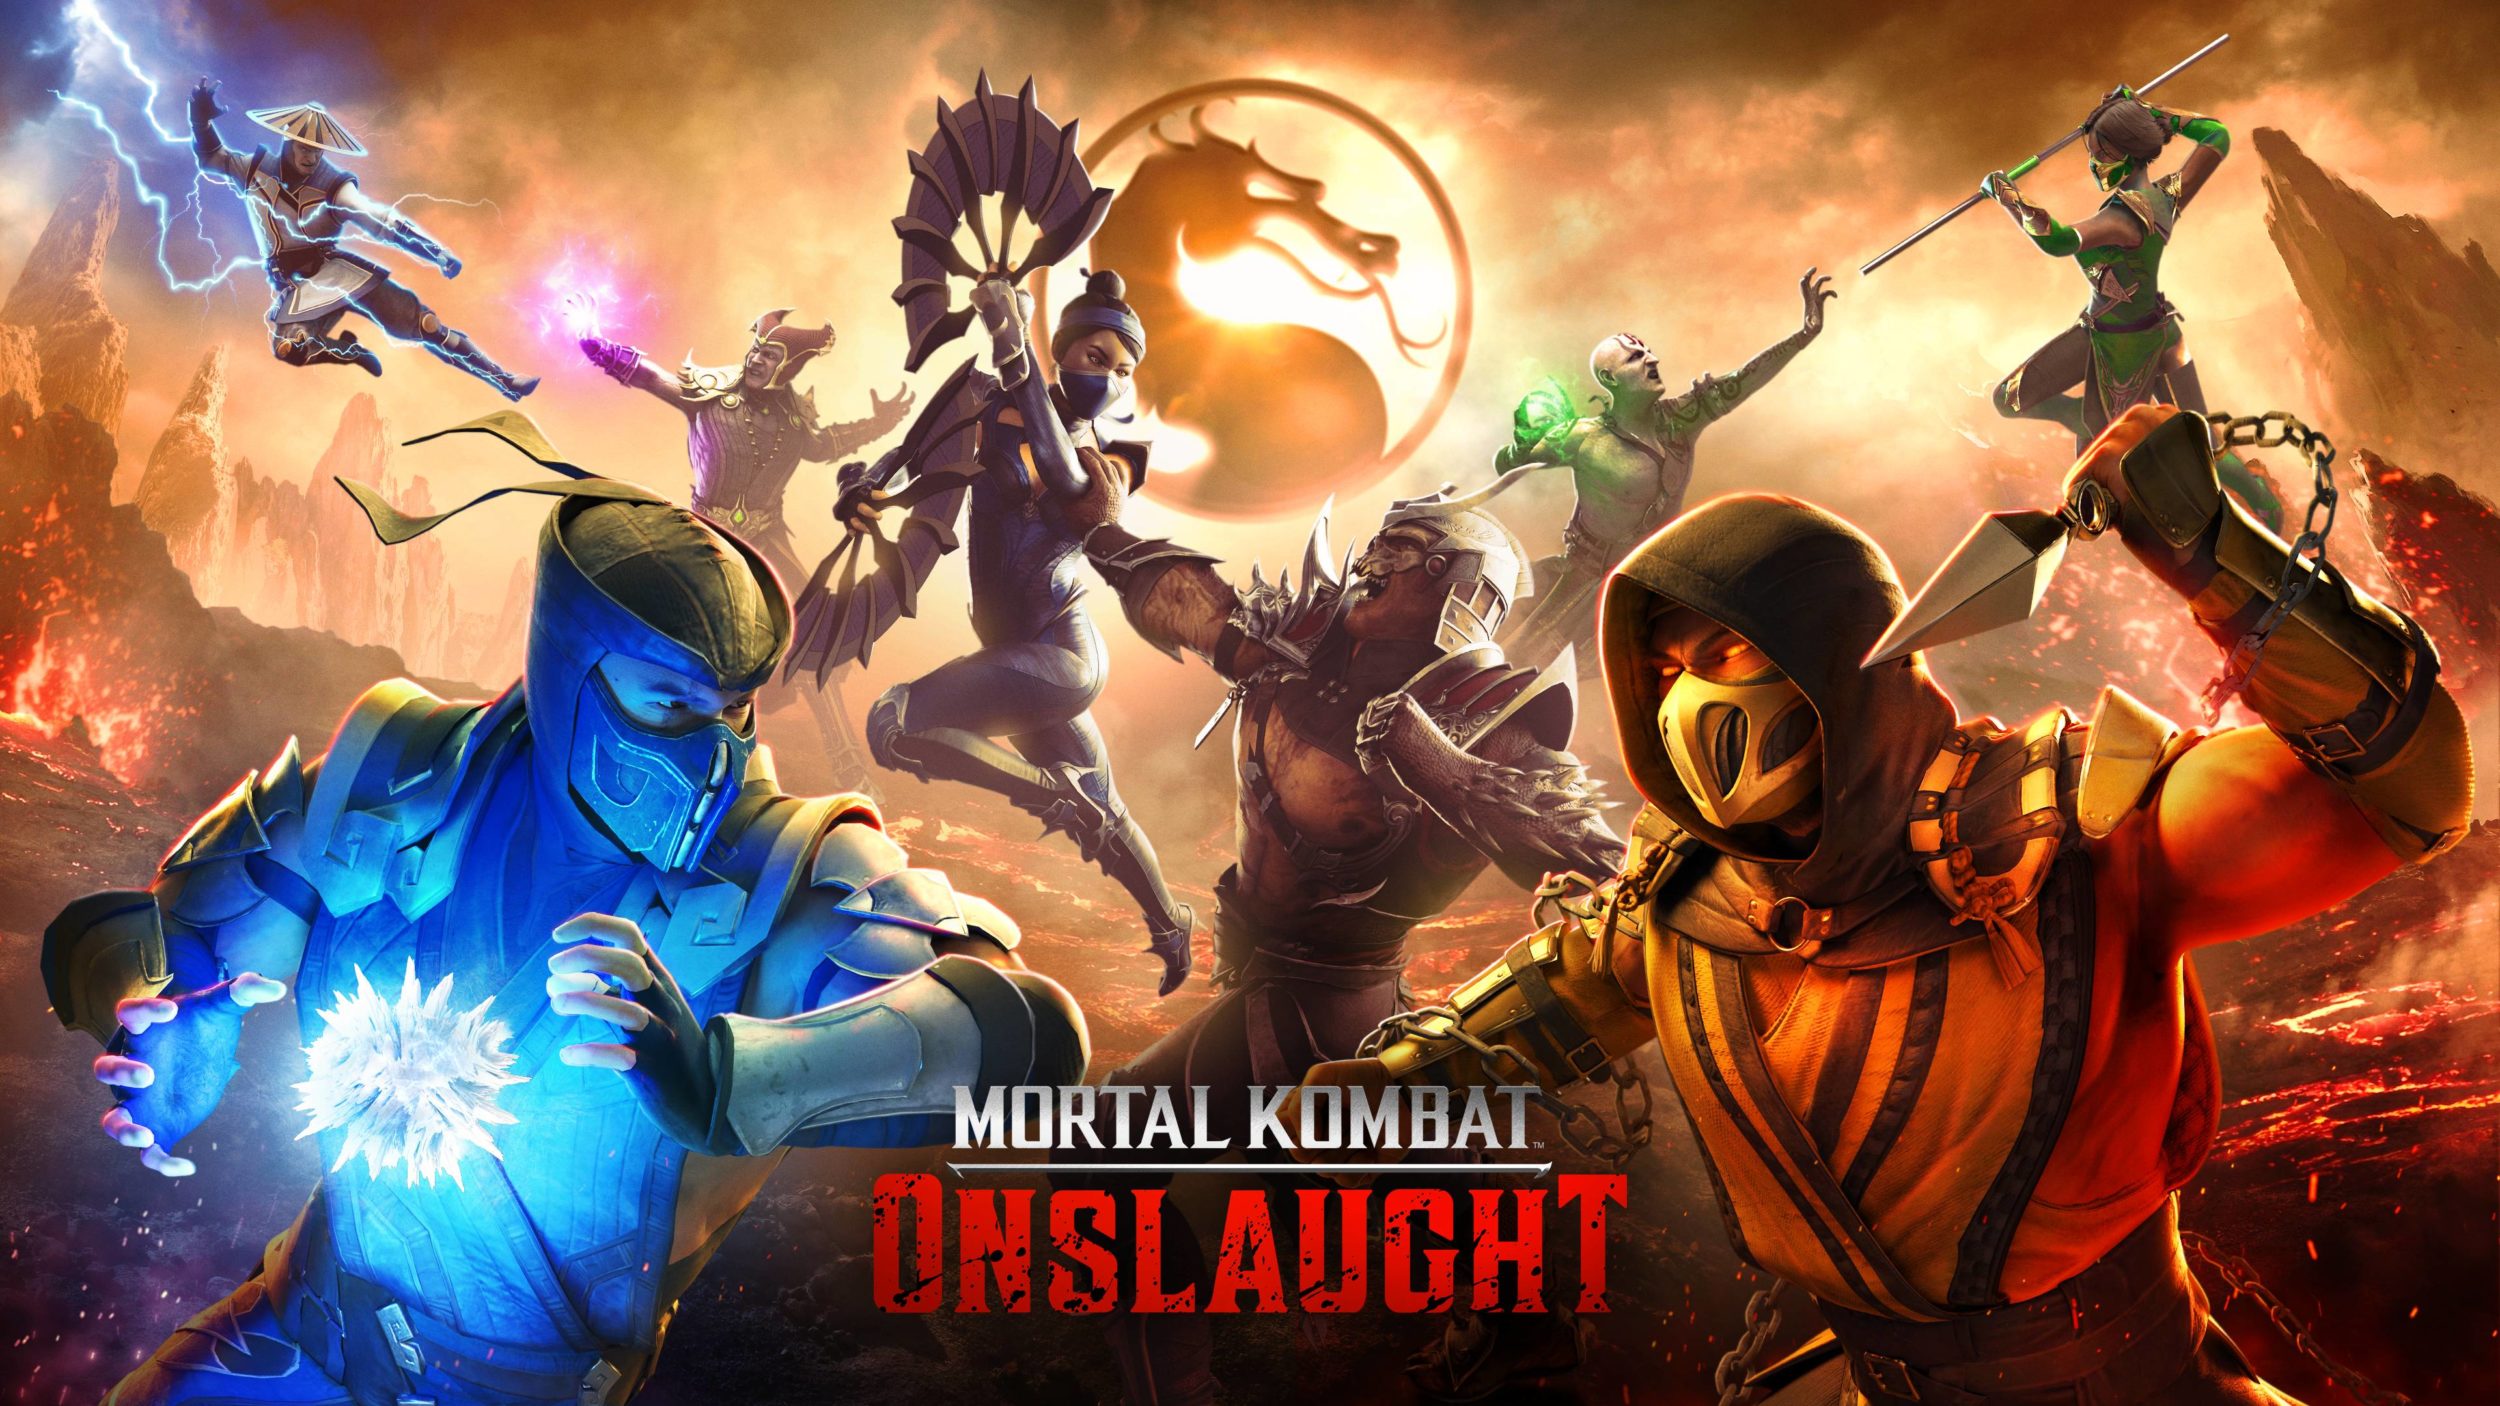 Warner Bros. Games Announces Mortal Kombat Onslaught Warner Bros